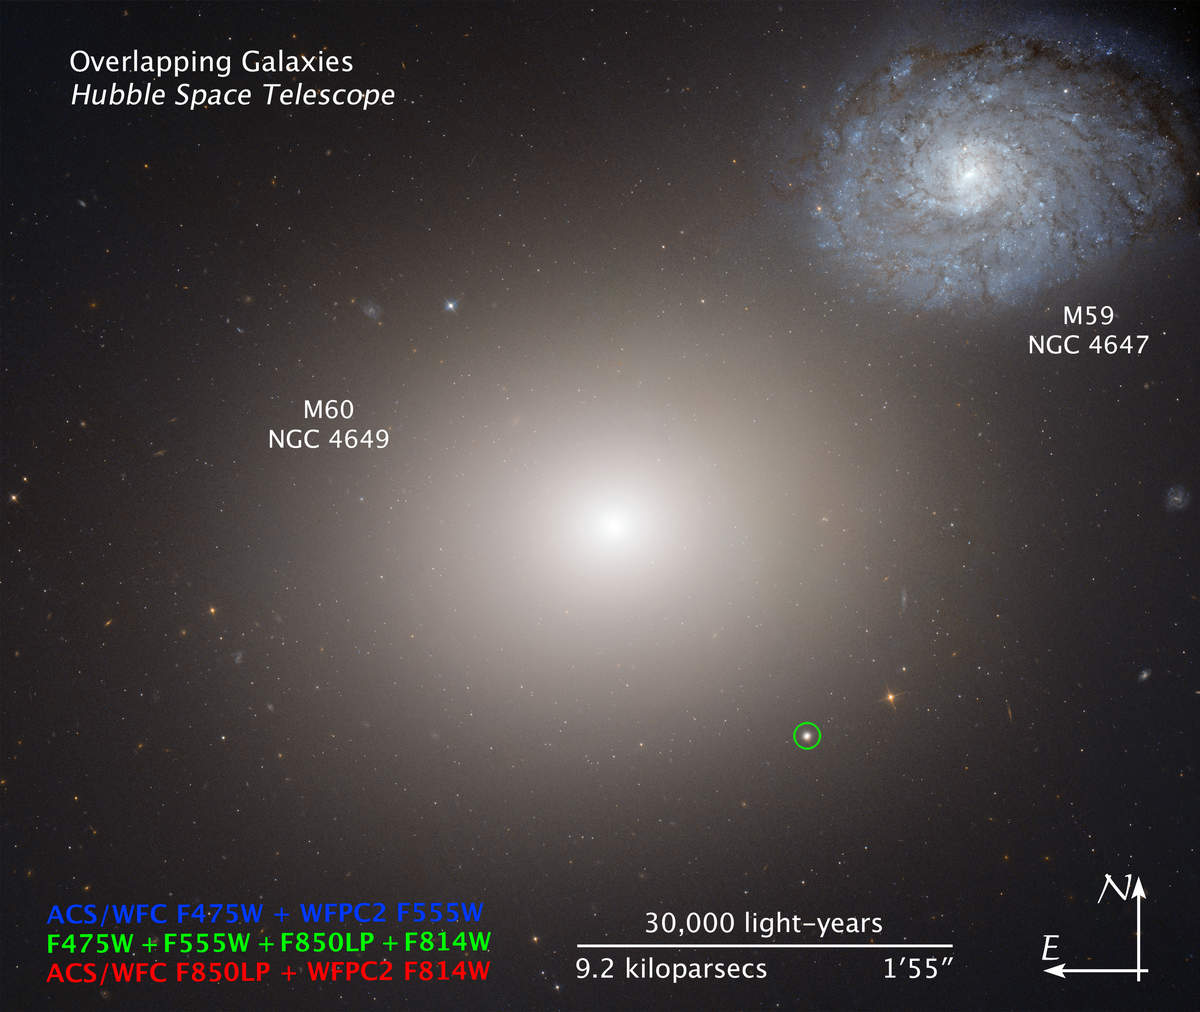 矮星系m60-ucd1中心地带发现潜藏一个"超大质量"黑洞